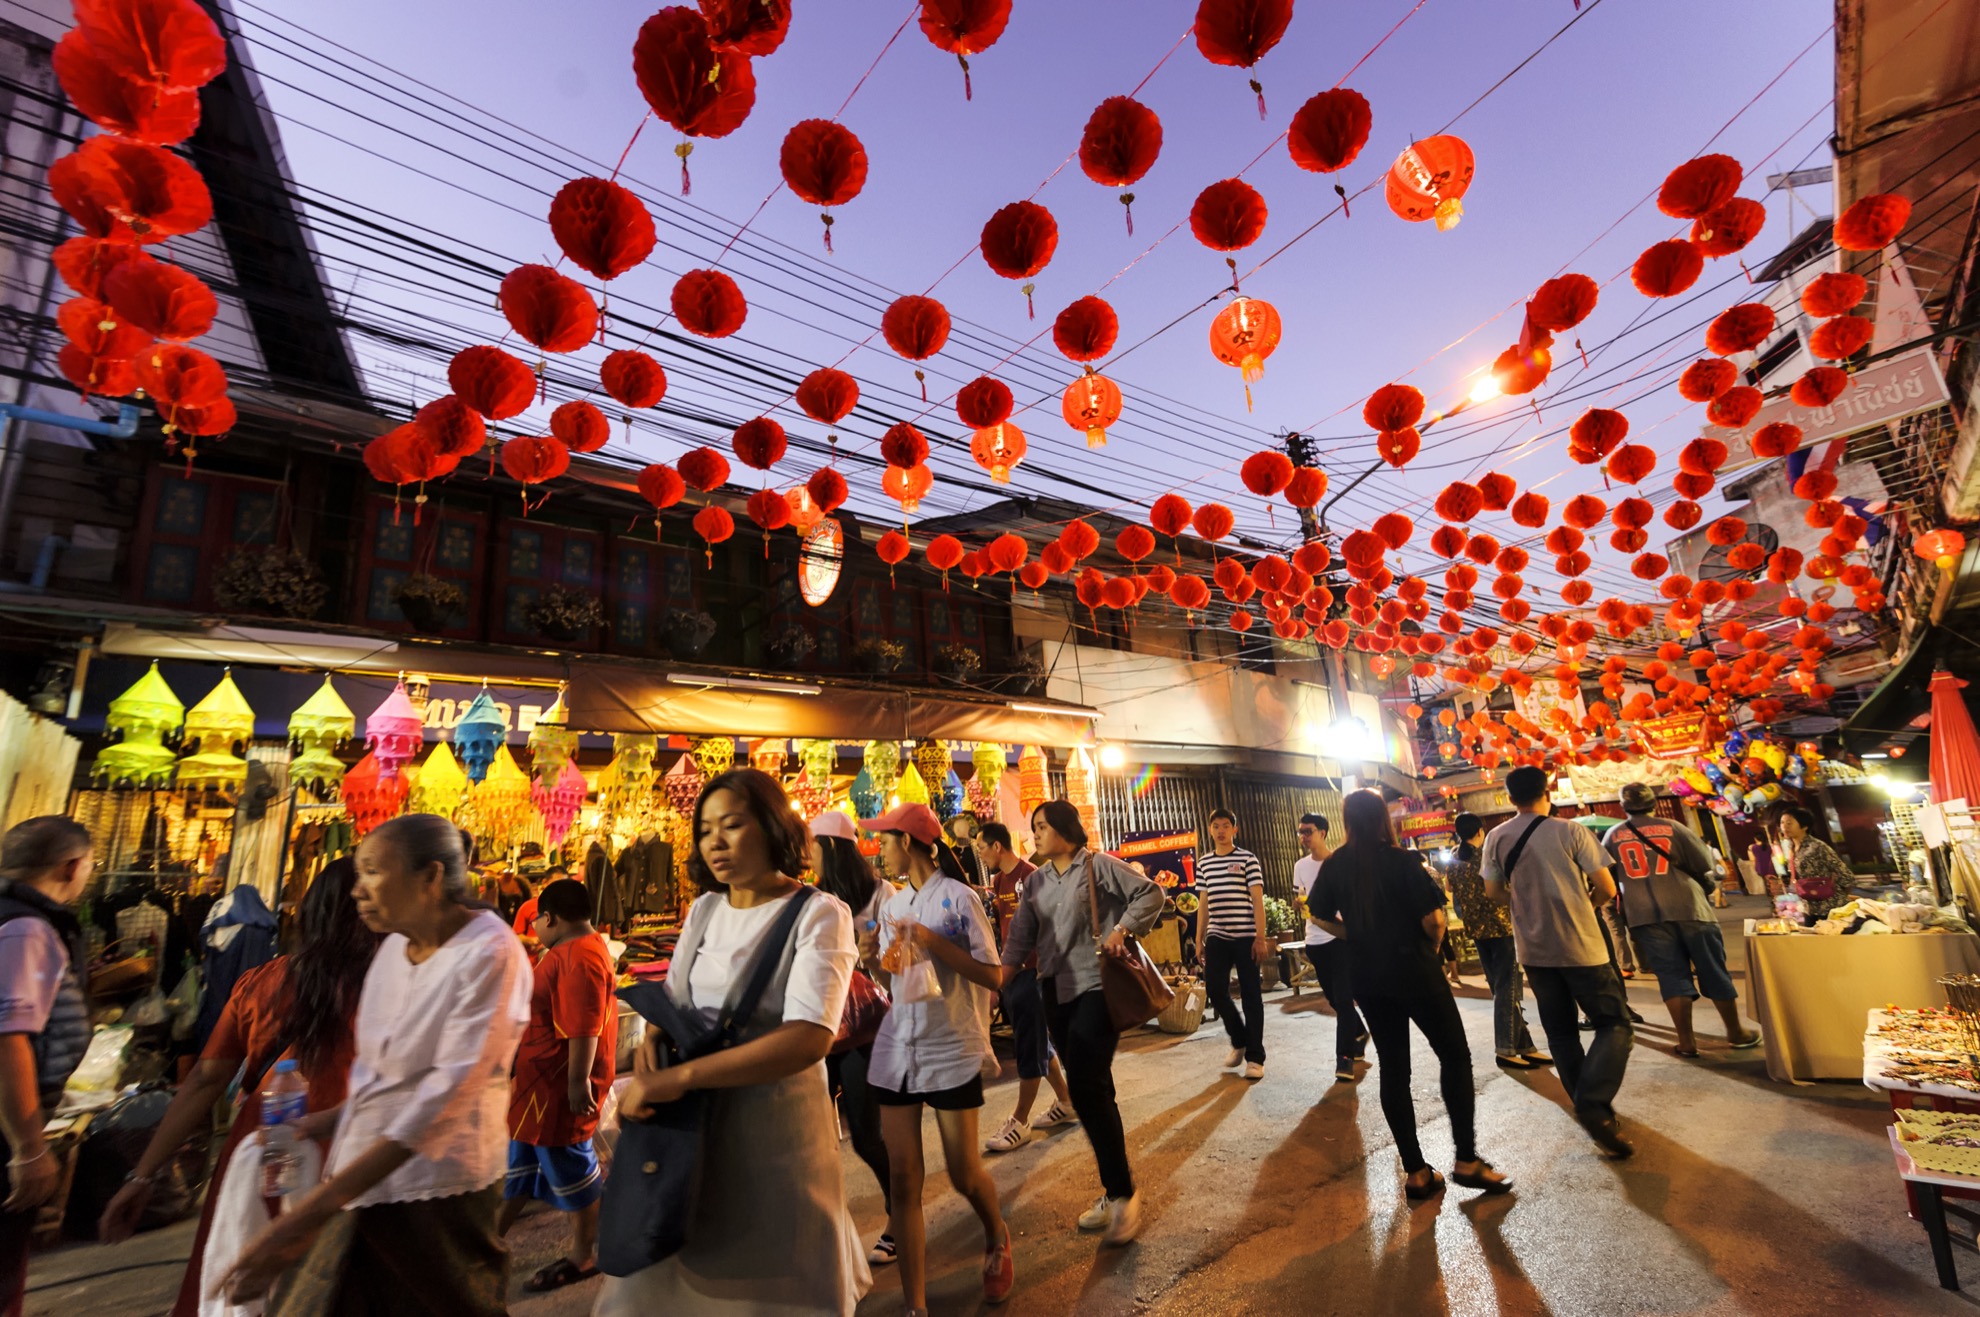 7 Datos rápidos sobre el festival Yi Peng Lantern de Tailandia - 15